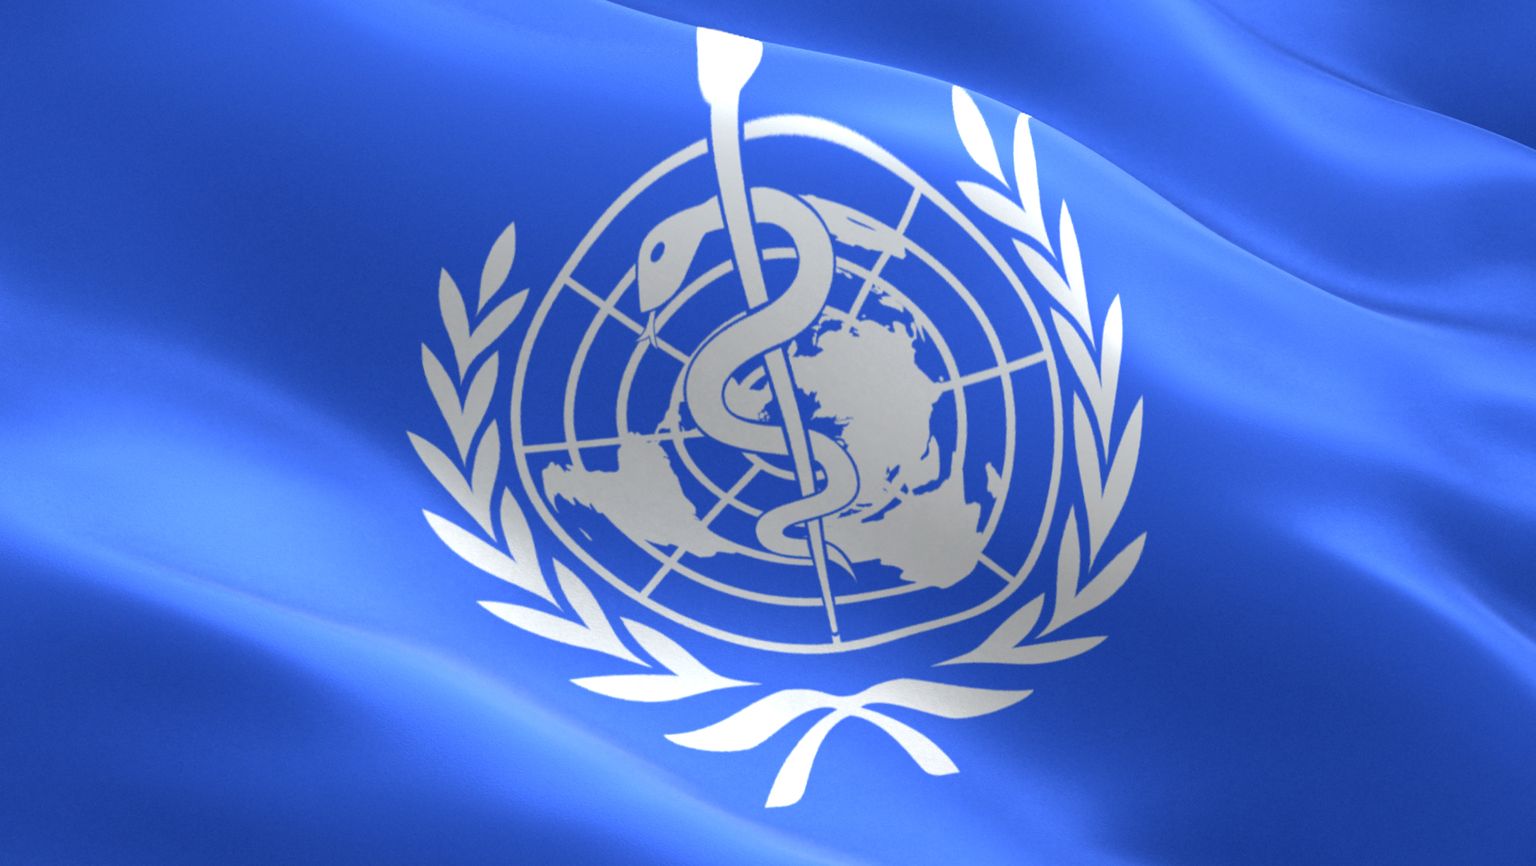 Maailma terviseorganisatsiooni logo.